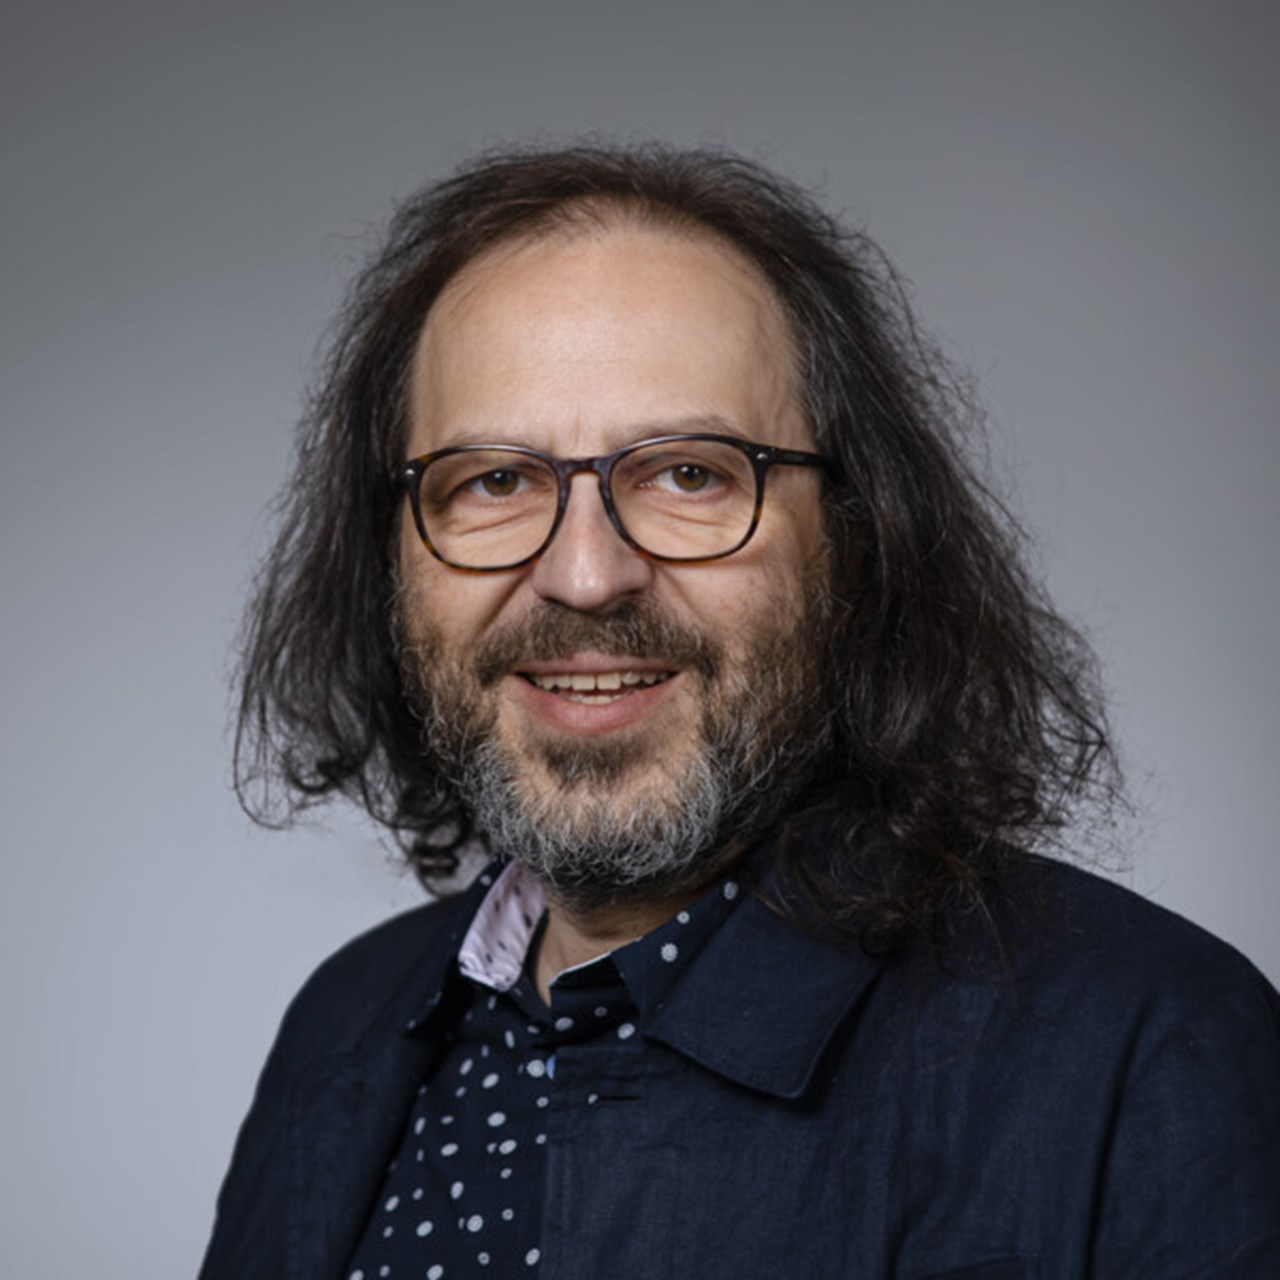 Porträtt på Dieter Müller, vicerektor vid Umeå universitet.